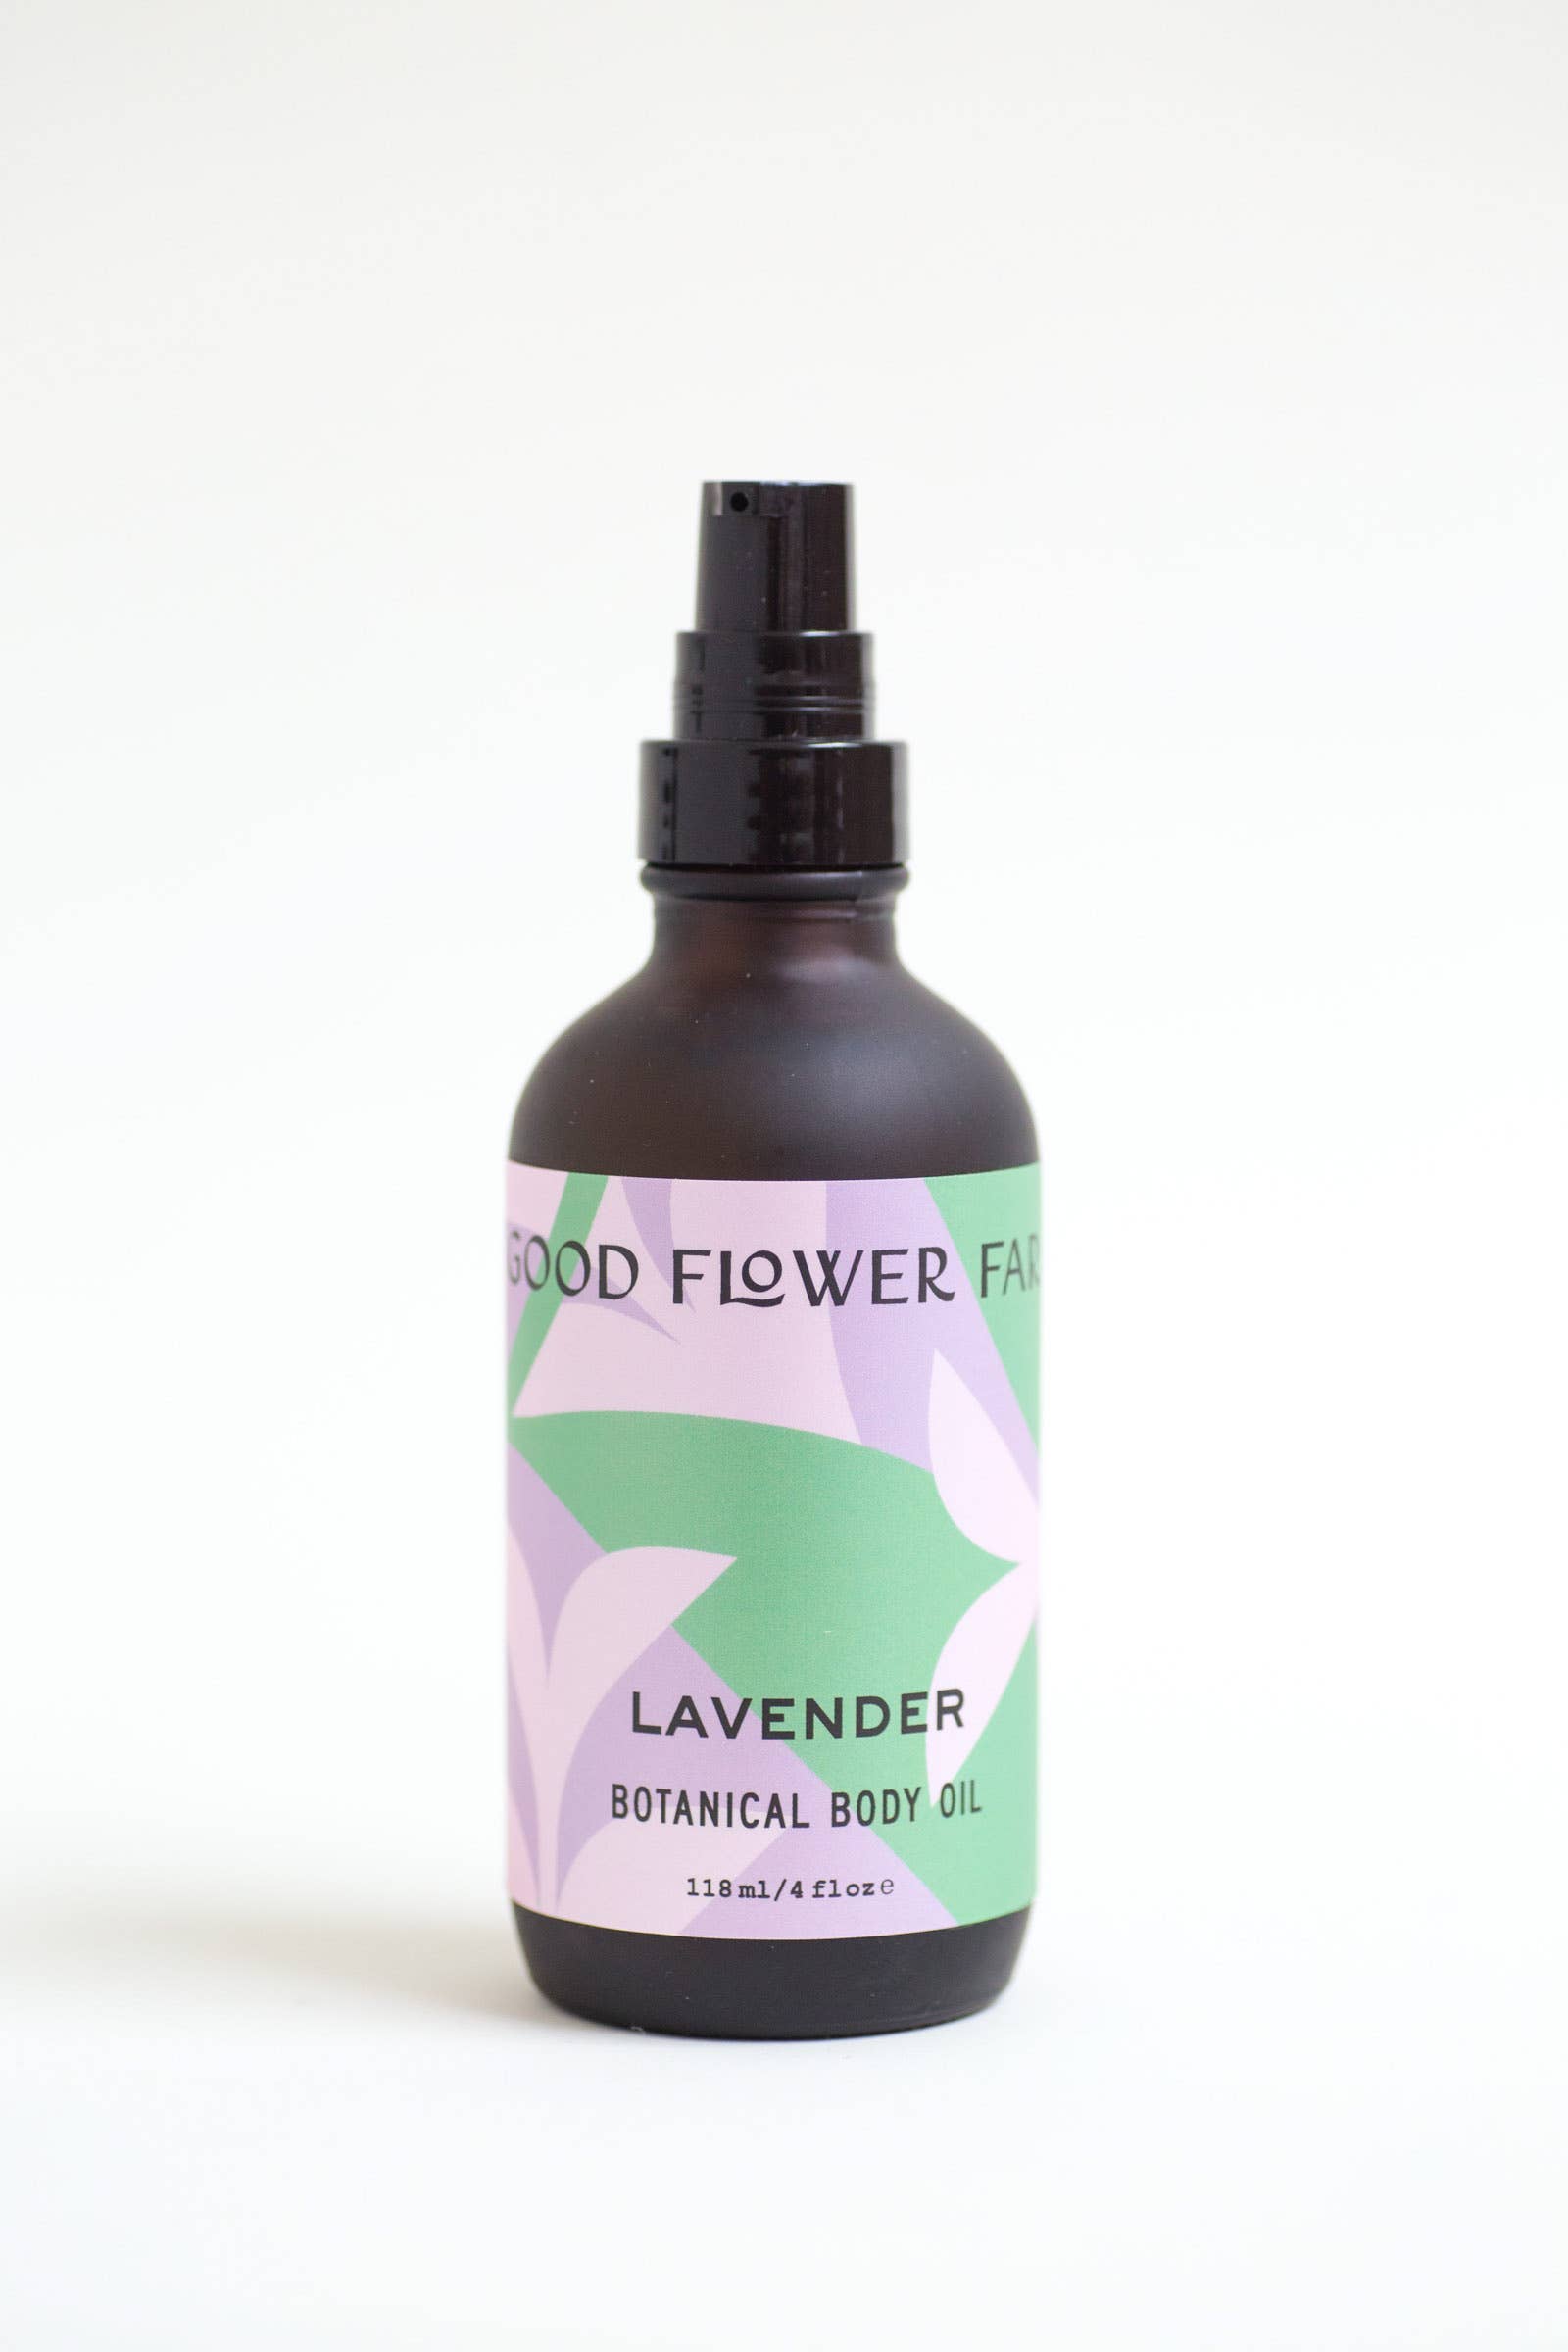 Lavender Botanical Body Oil | Good Flower Farm